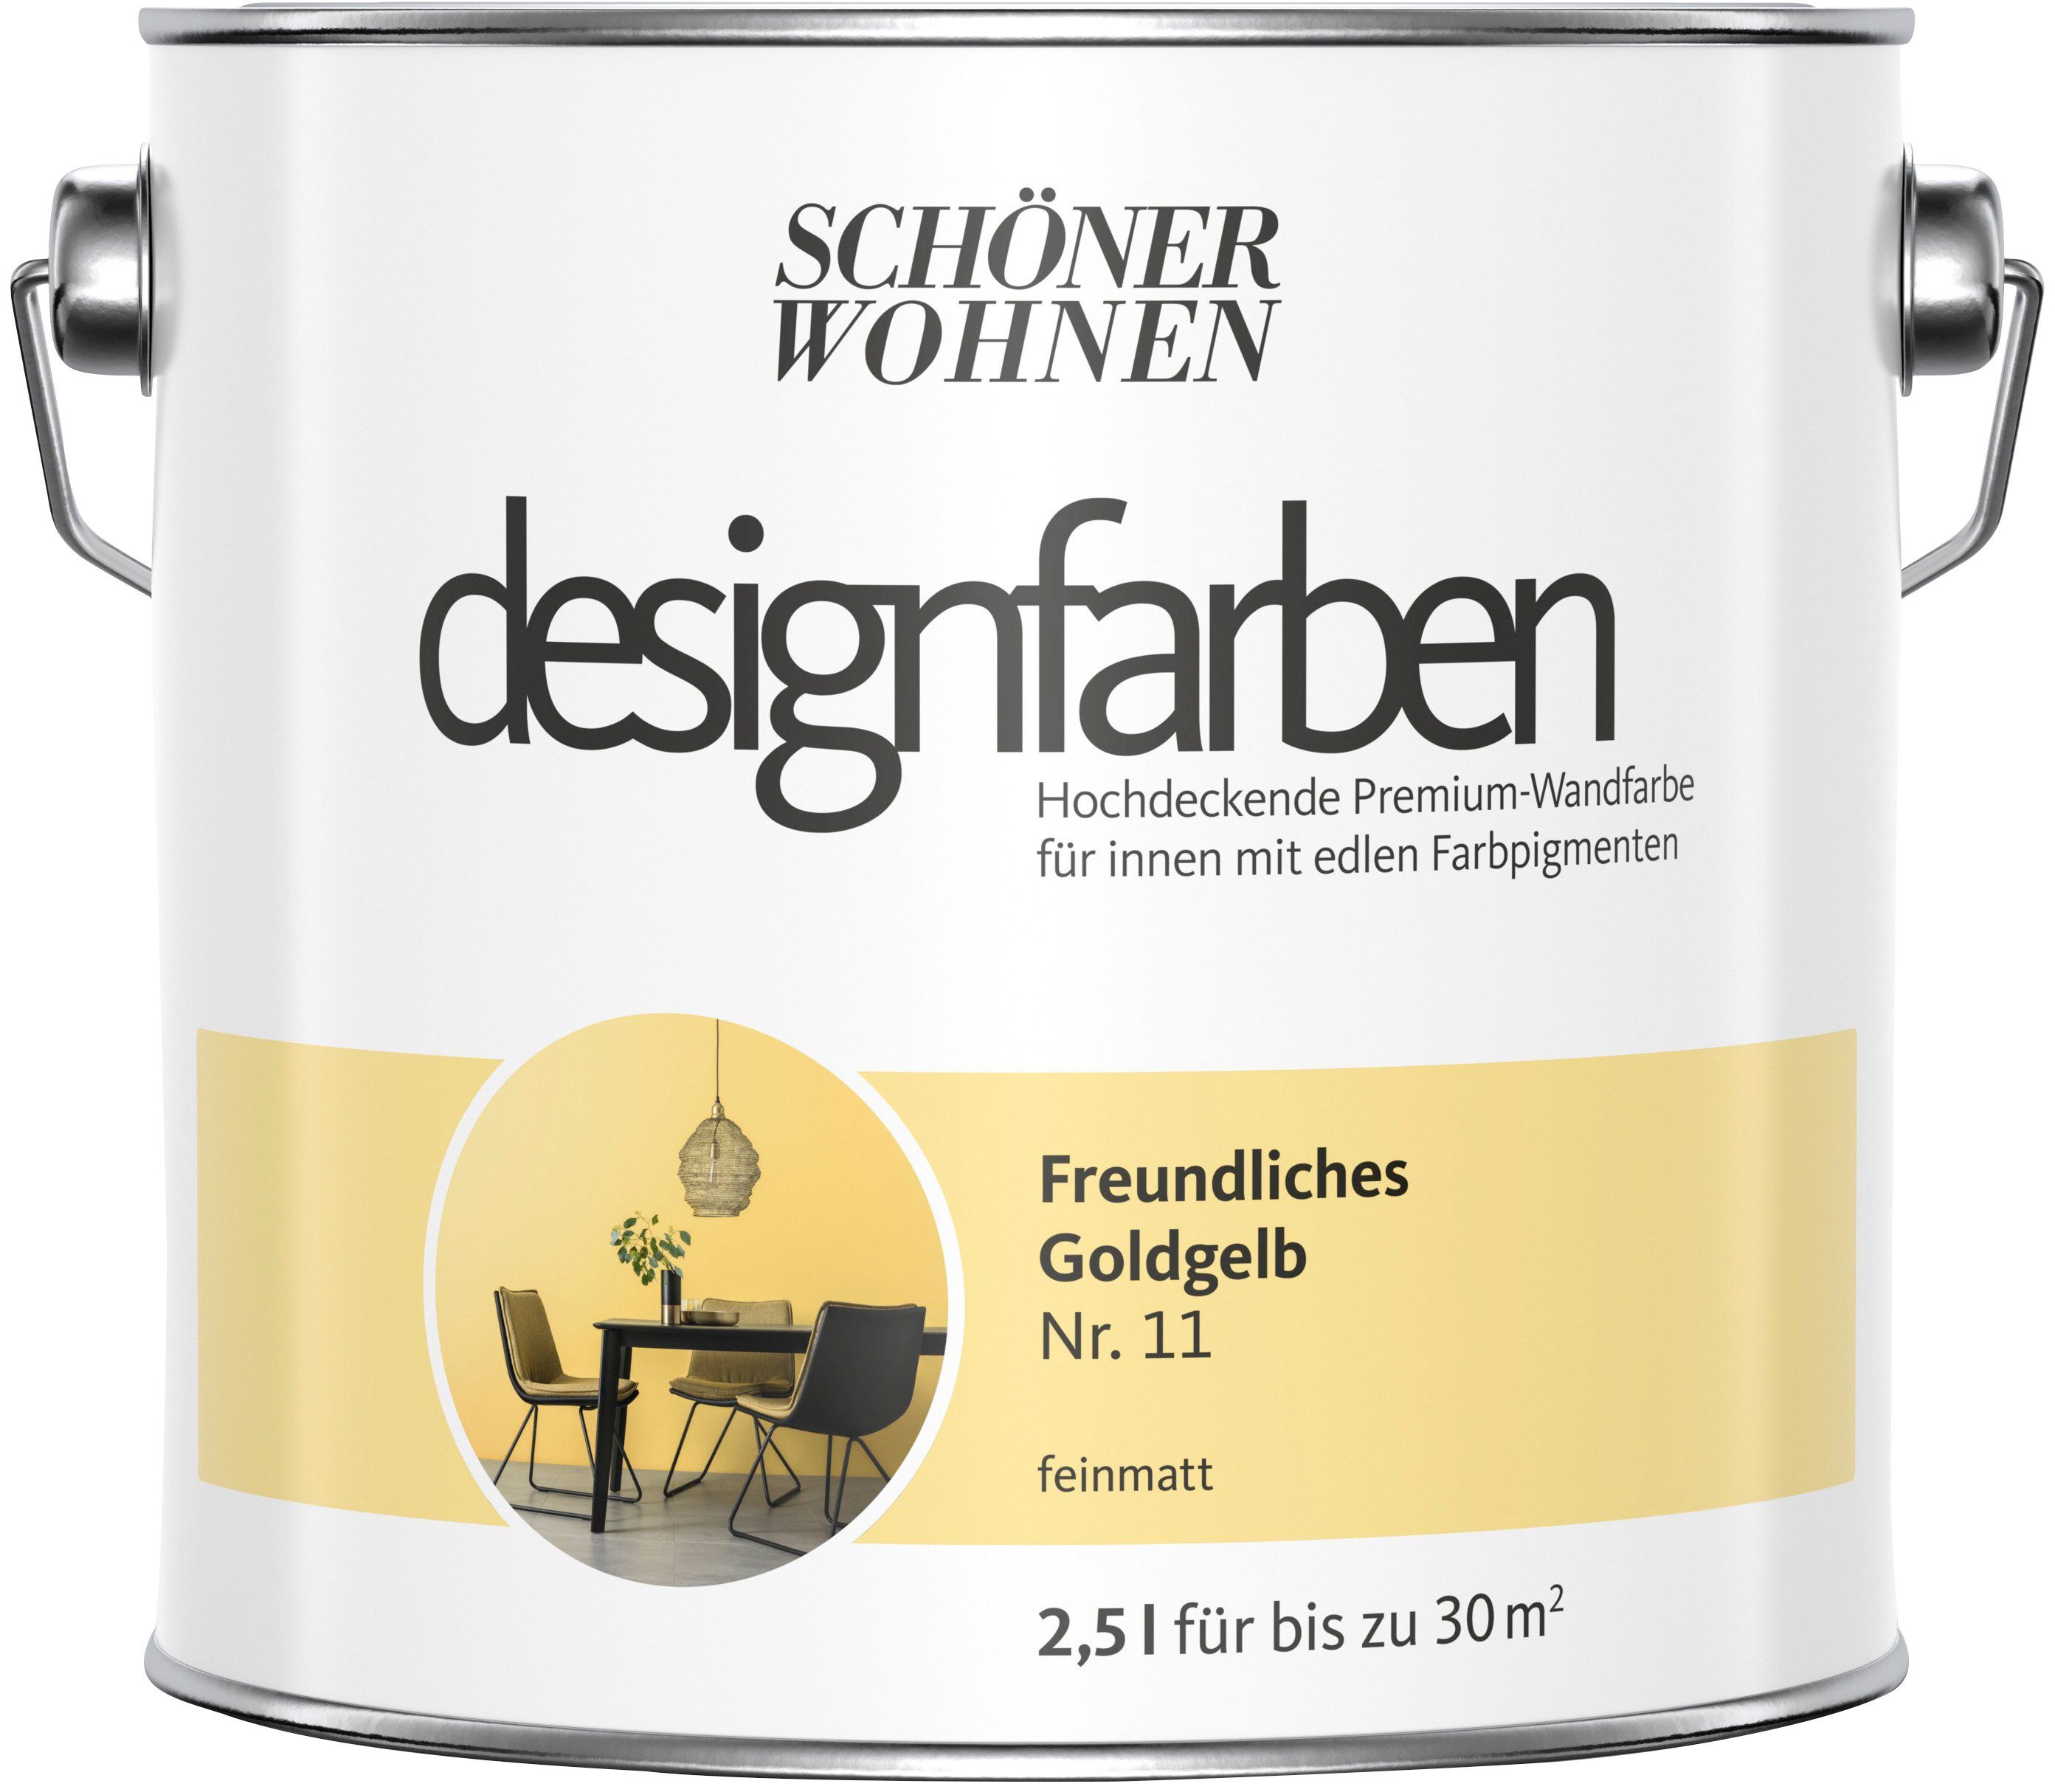 SCHÖNER WOHNEN FARBE 11, hochdeckende Freundliches Premium-Wandfarbe Goldgelb Wand- und Nr. Deckenfarbe Designfarben